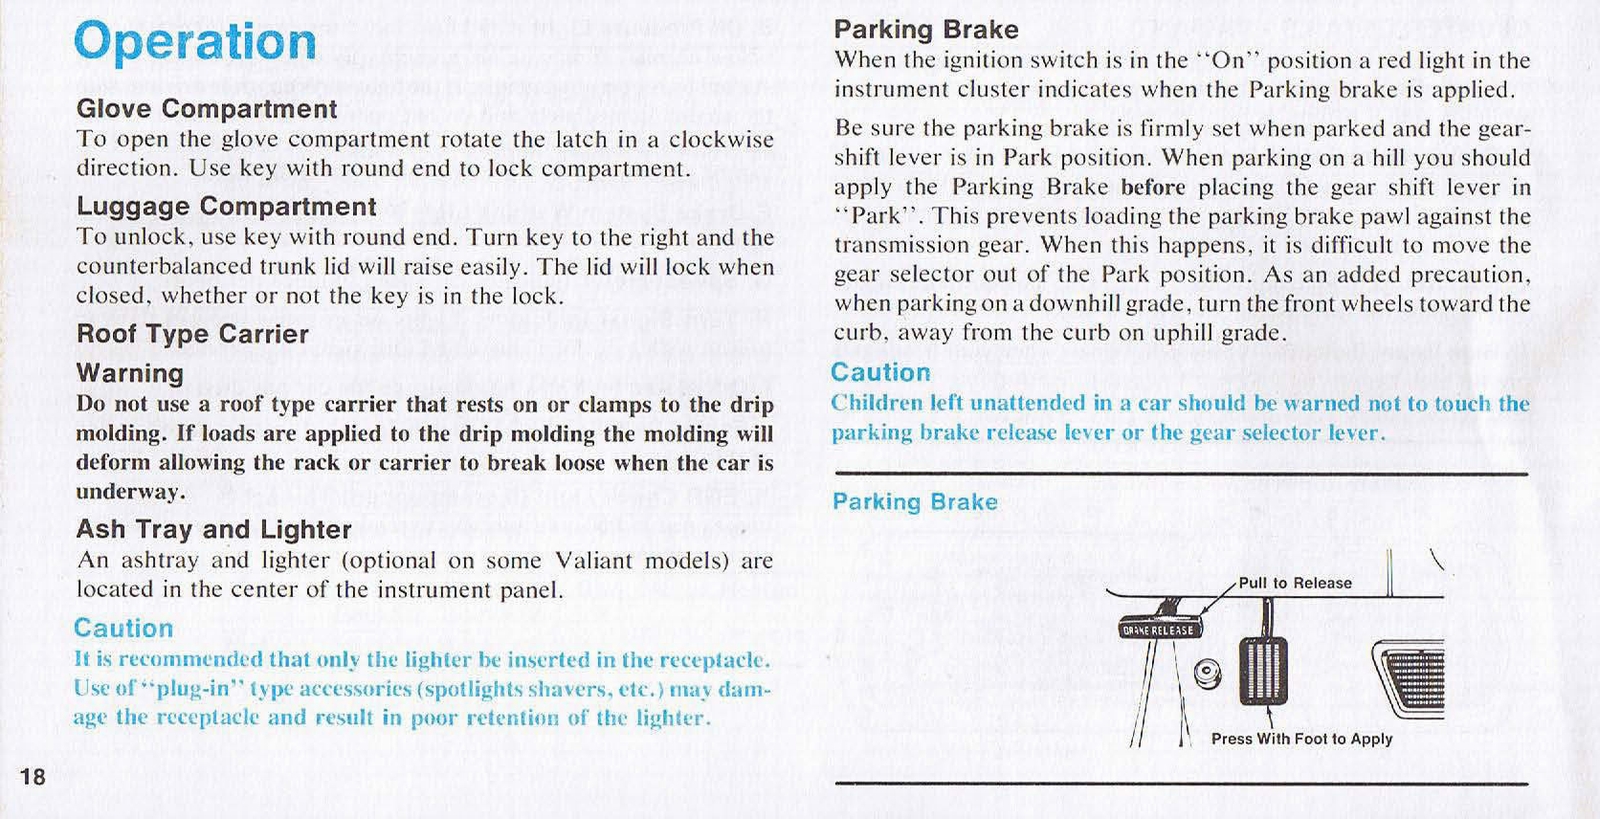 n_1976 Plymouth Owners Manual-18.jpg